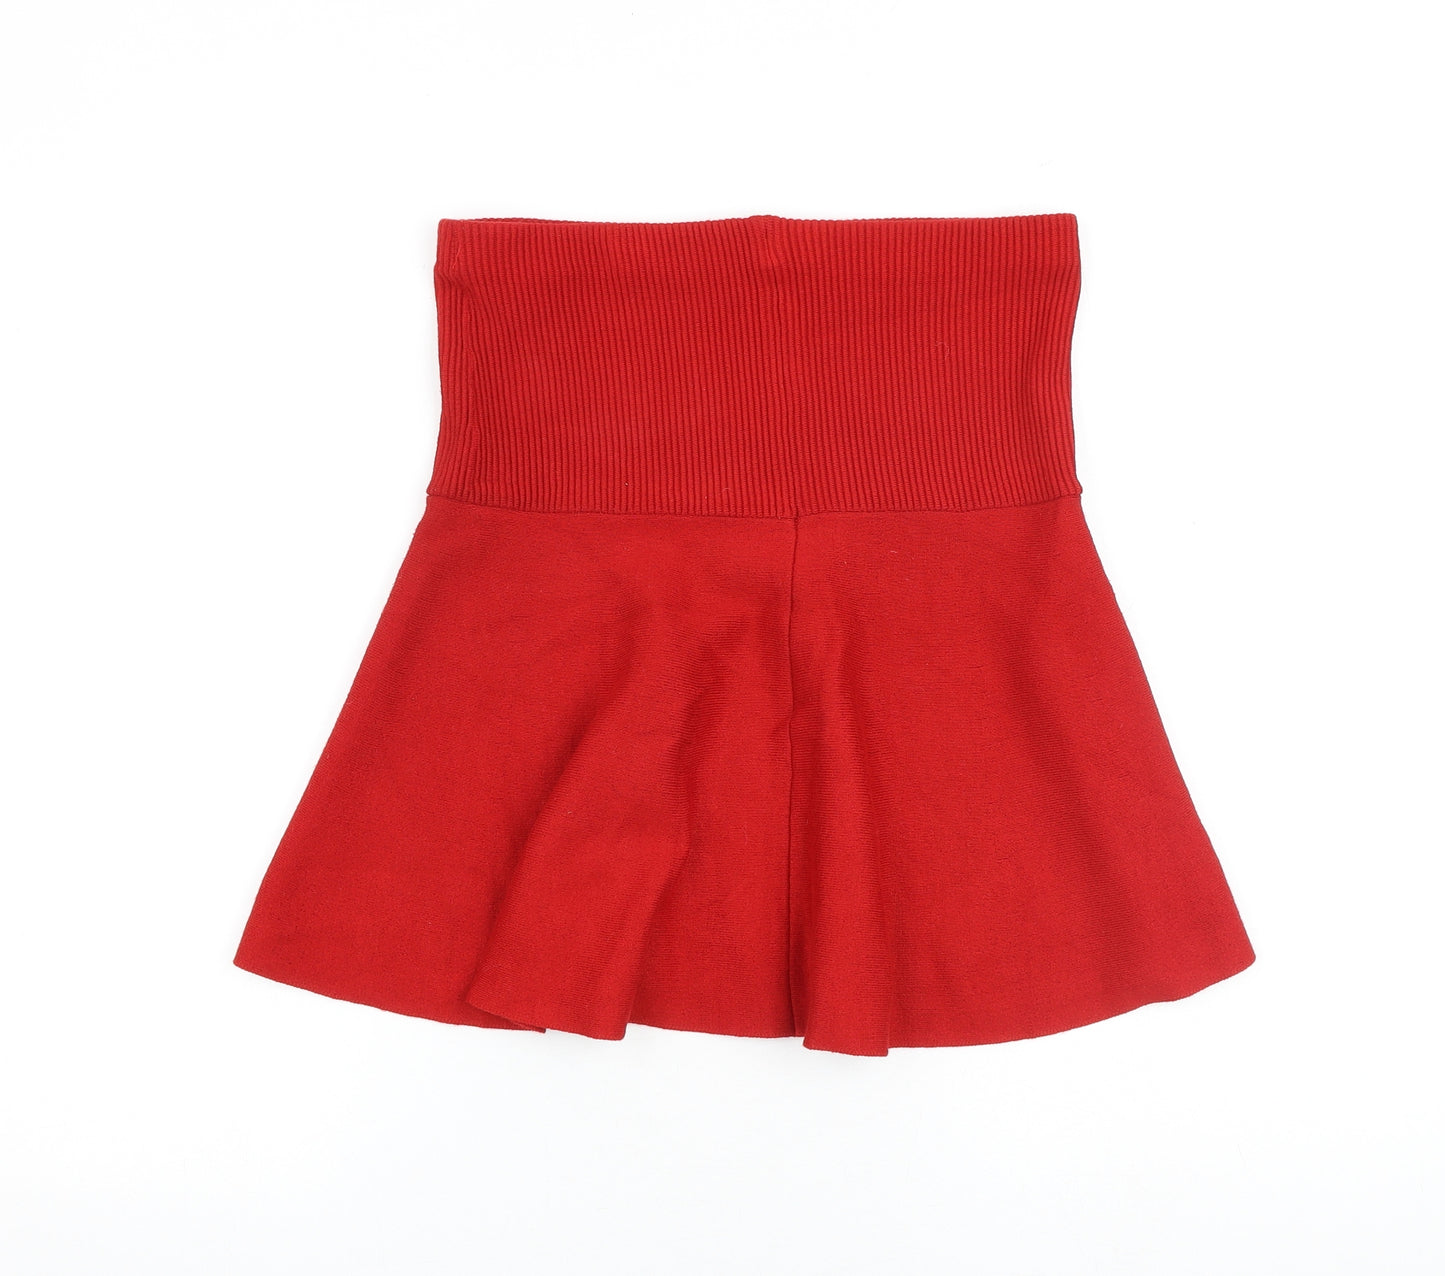 Zara Womens Red Polyester Skater Skirt Size S